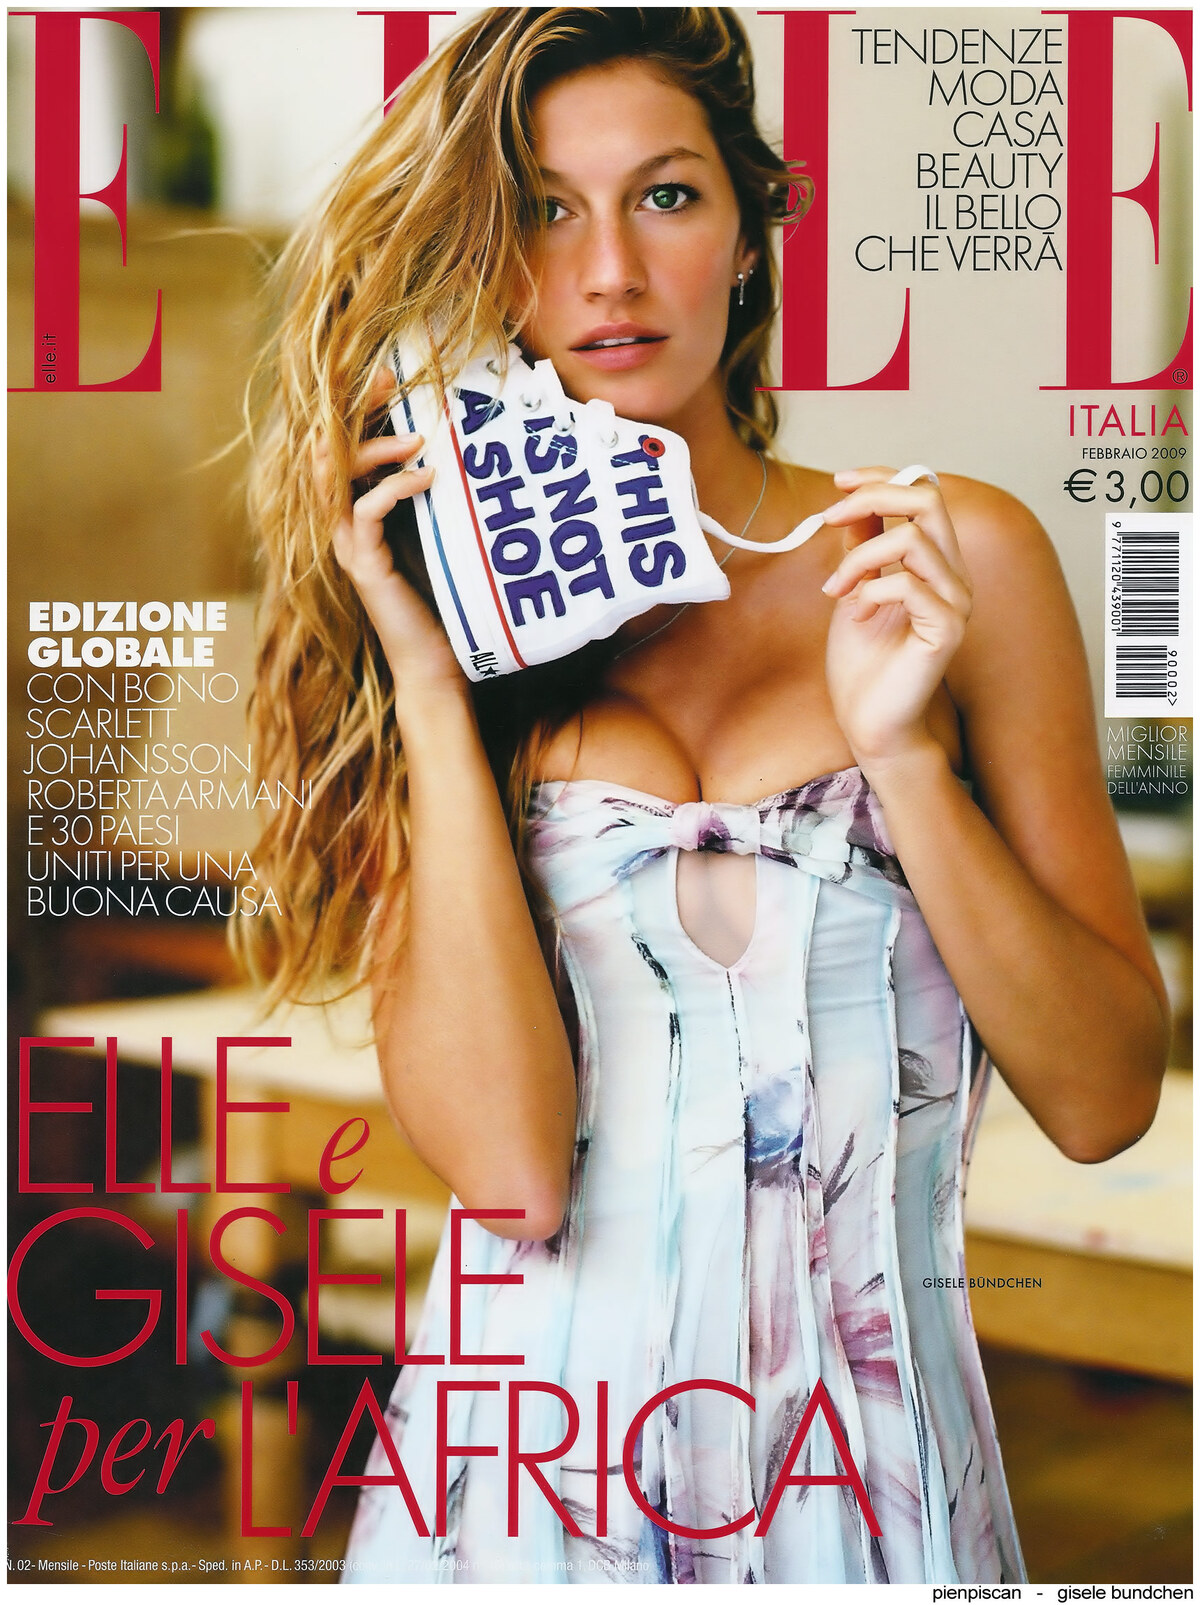 Жизель Бундхен в журнале Elle. Февраль 2009